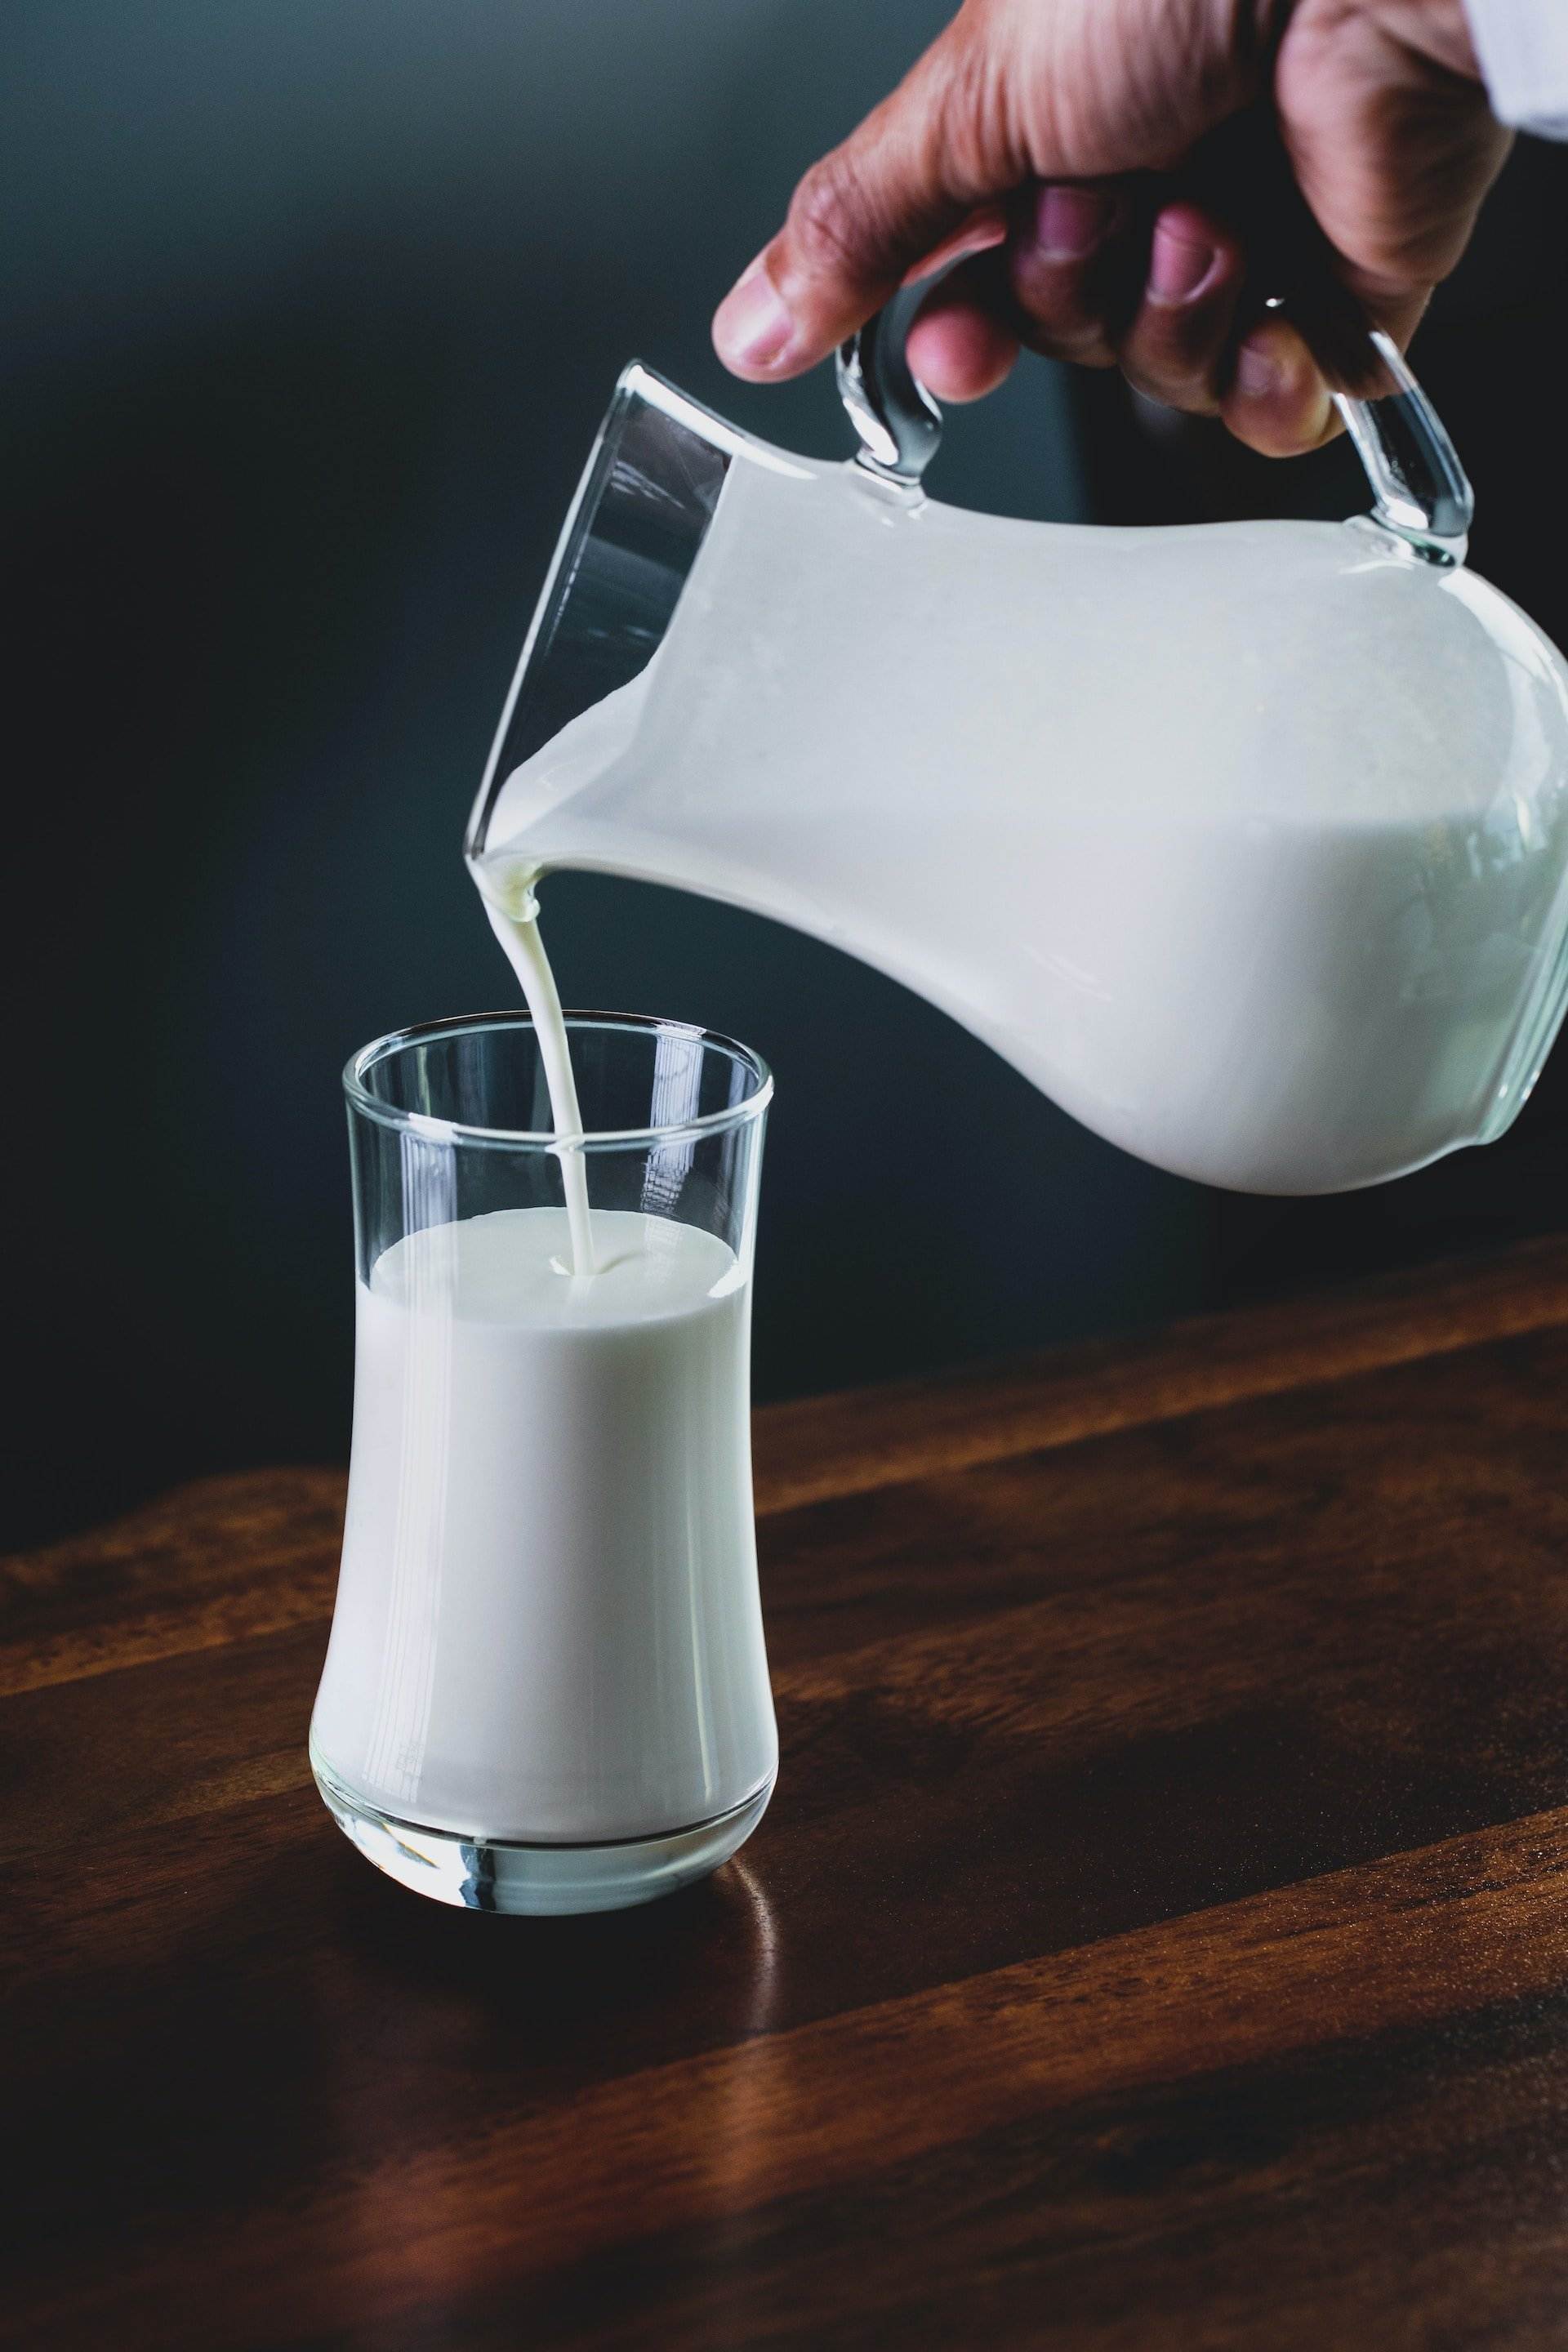 Els perills de la llet vegetal: aquestes són les recomanacions de l'OMS